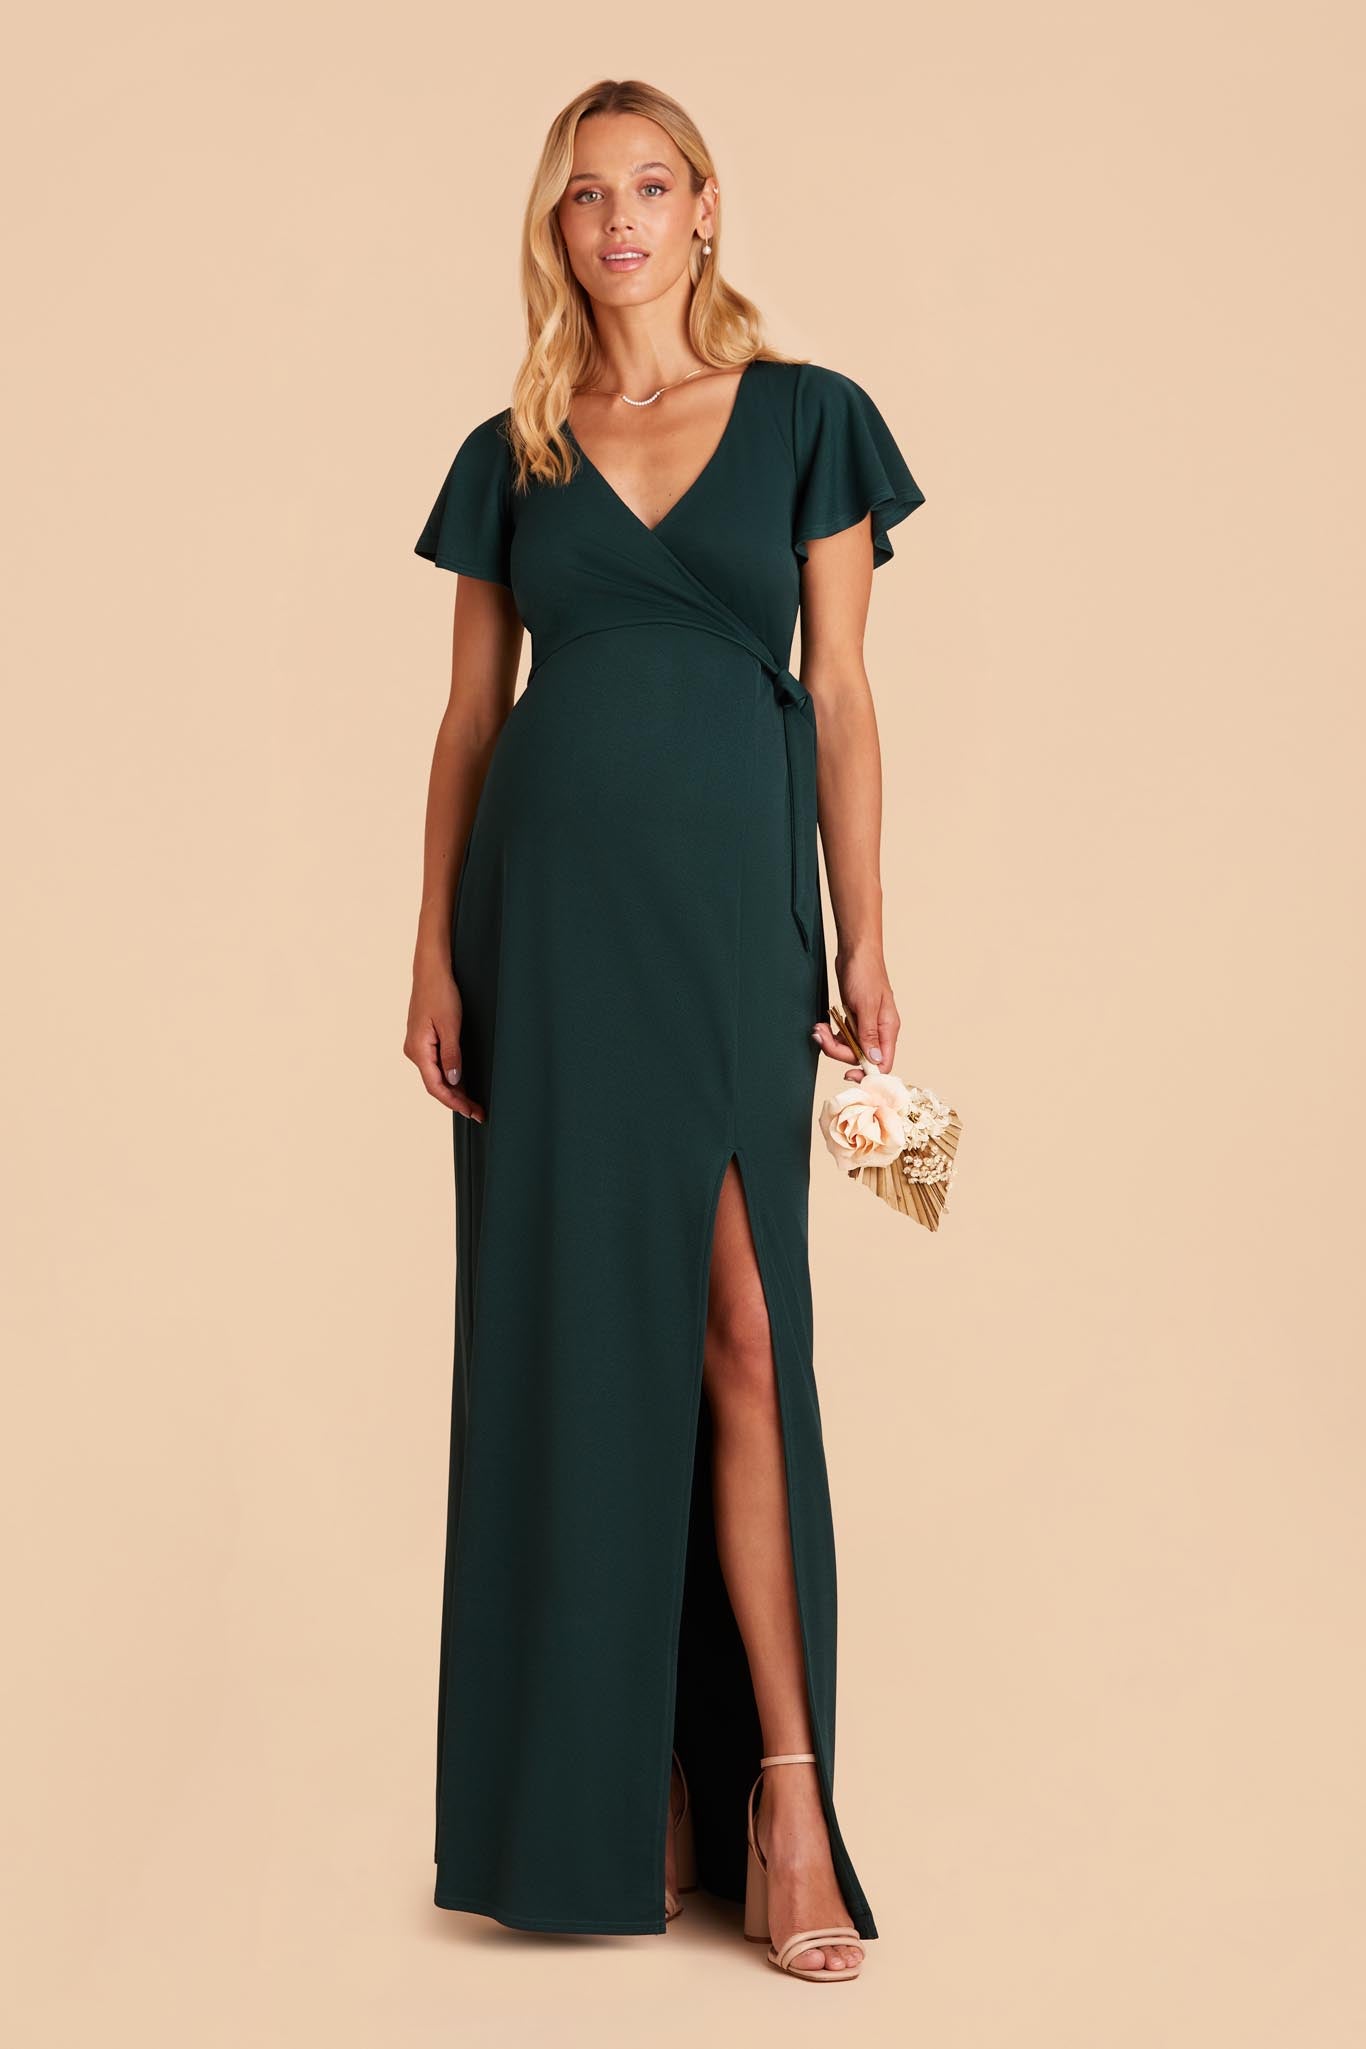 Emerald Yolanda Crepe Dress by Birdy Grey